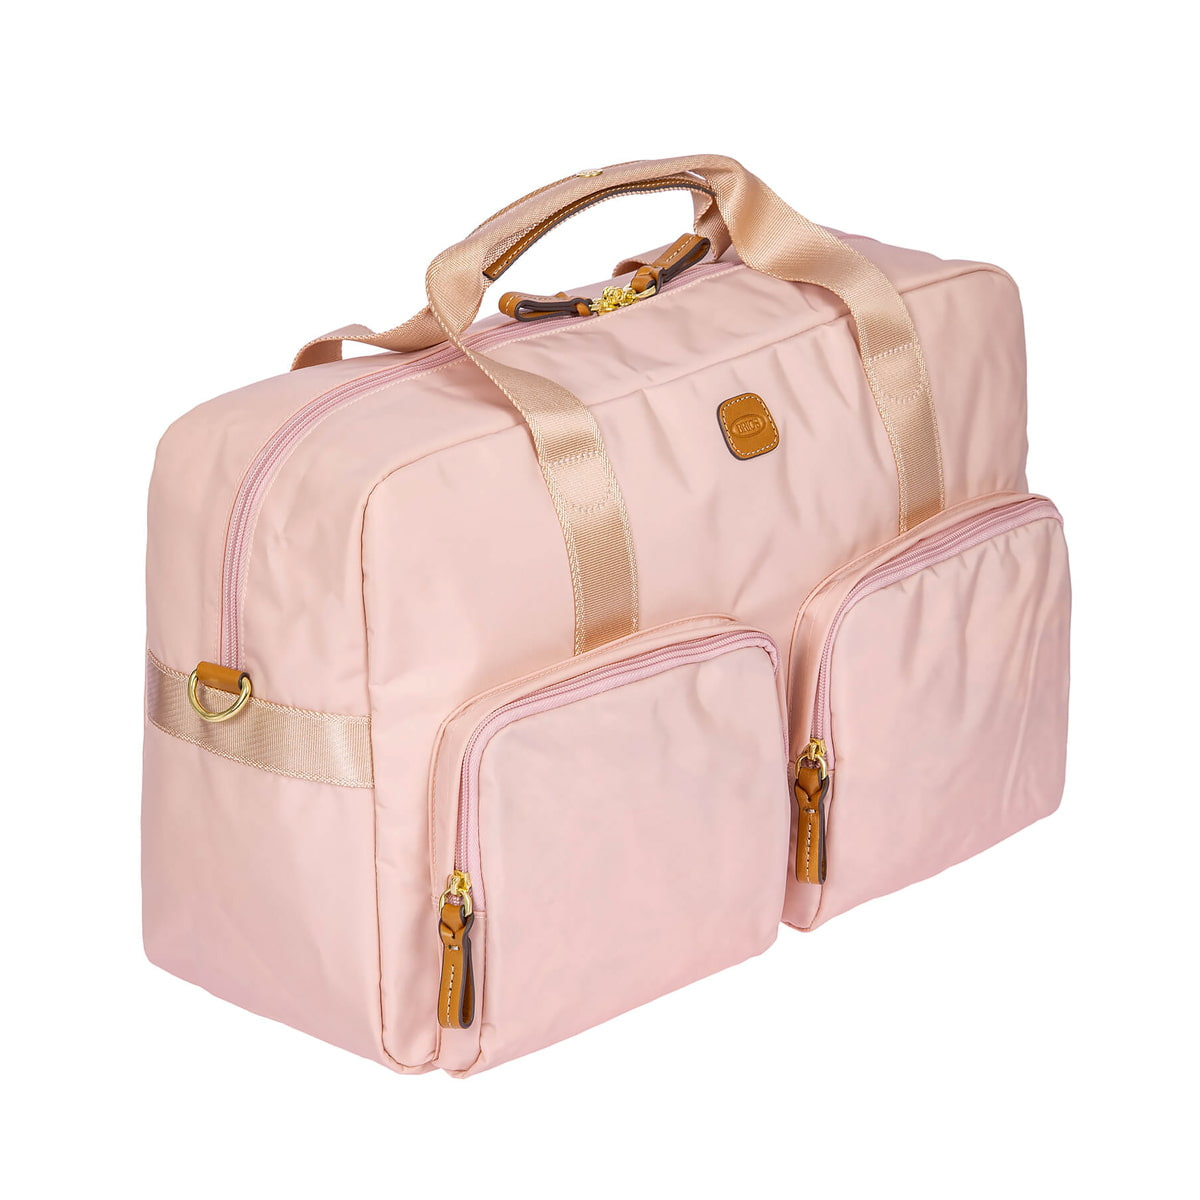 Pink weekender bag